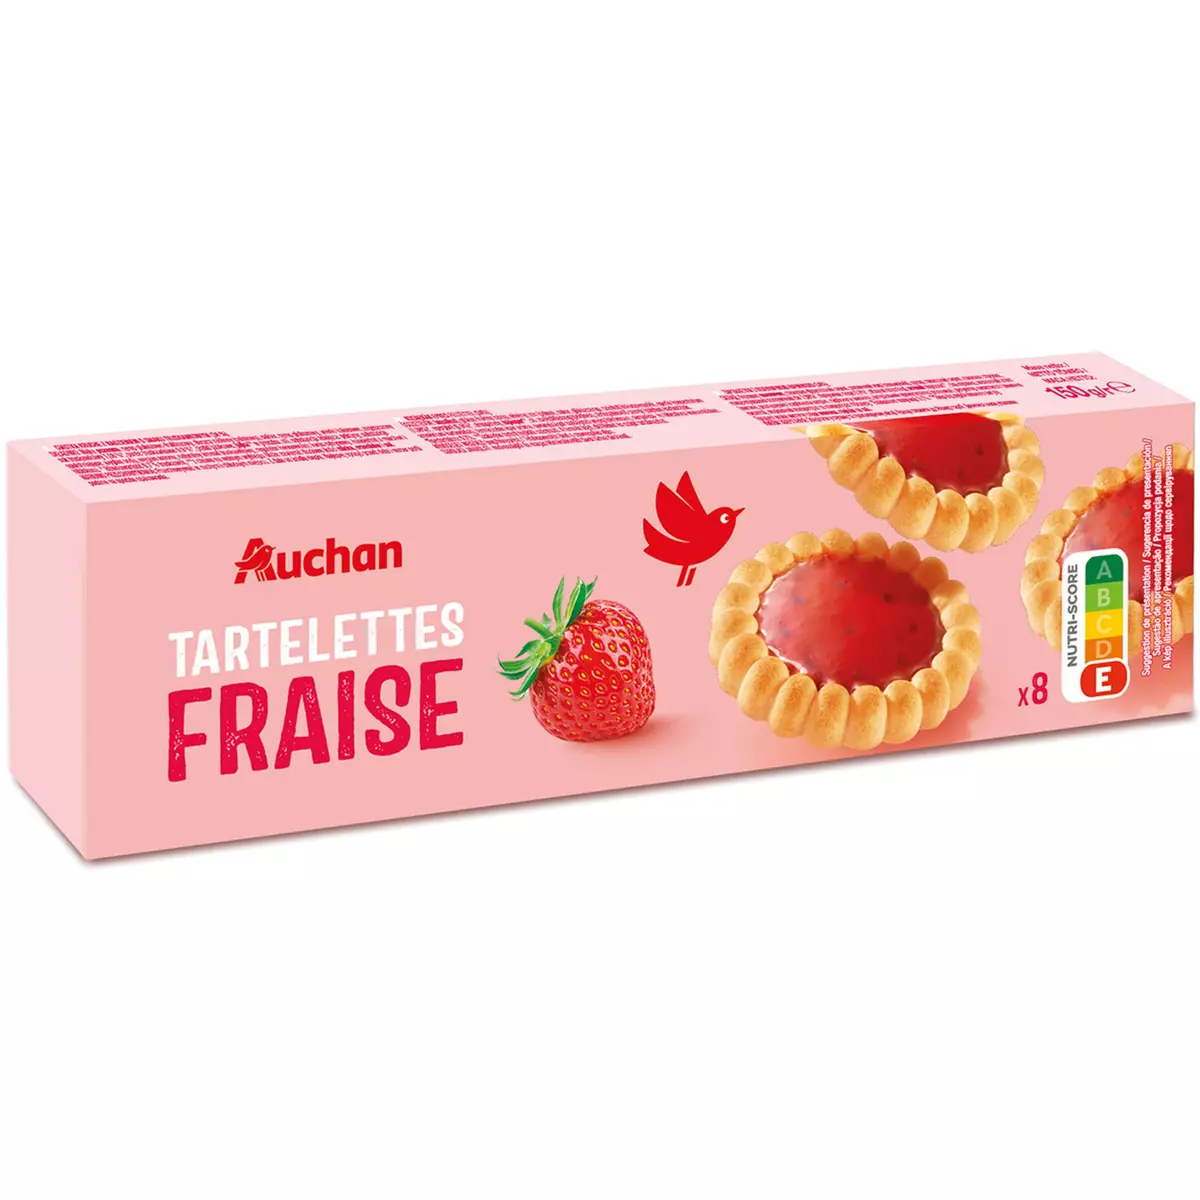 AUCHAN Tartelettes nappées saveur fraise 8 tartelettes 150g